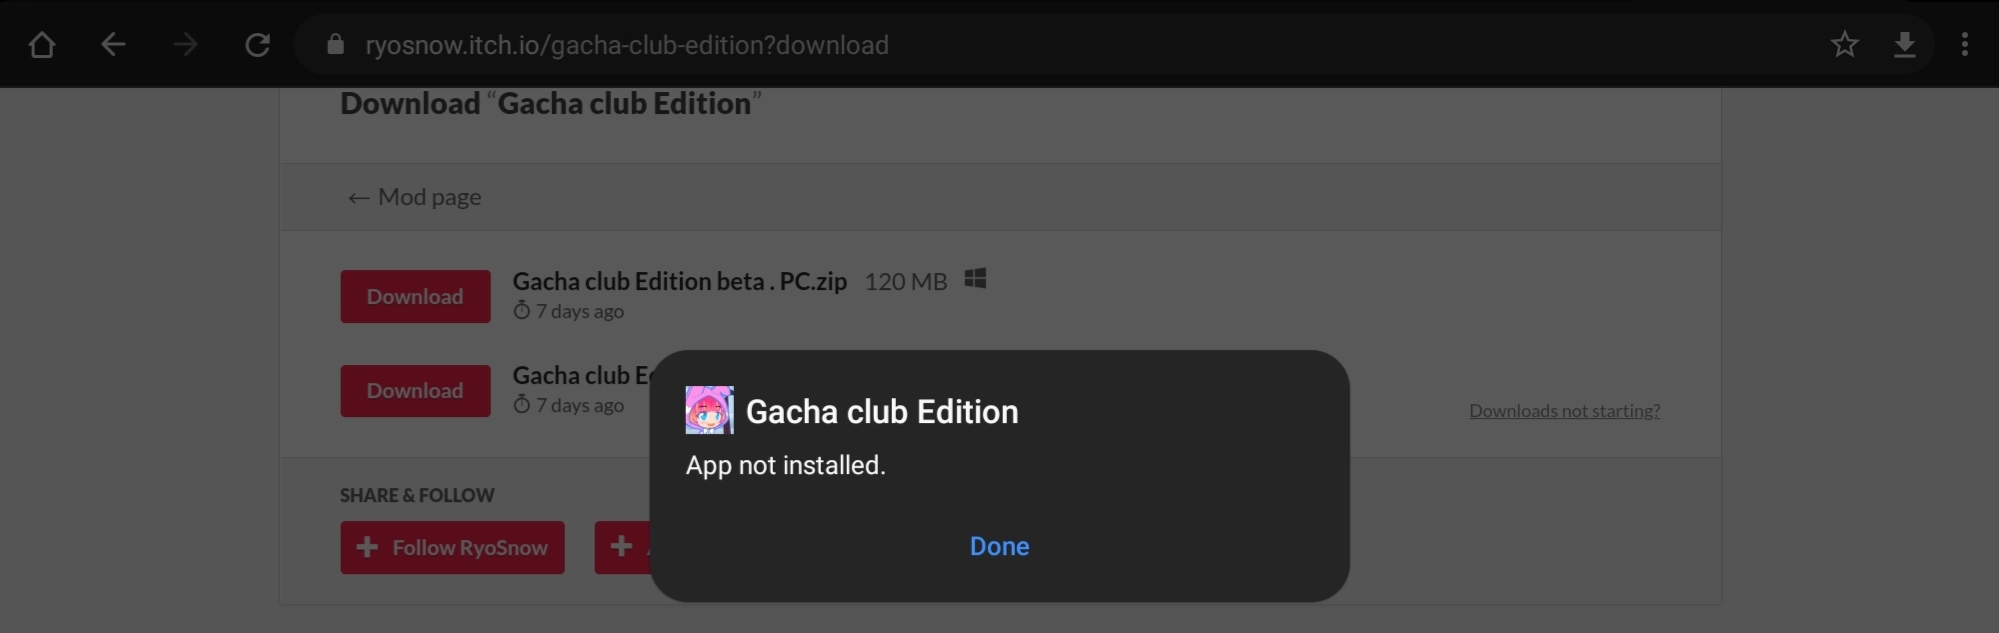 Gacha club Edition by RyoSnow